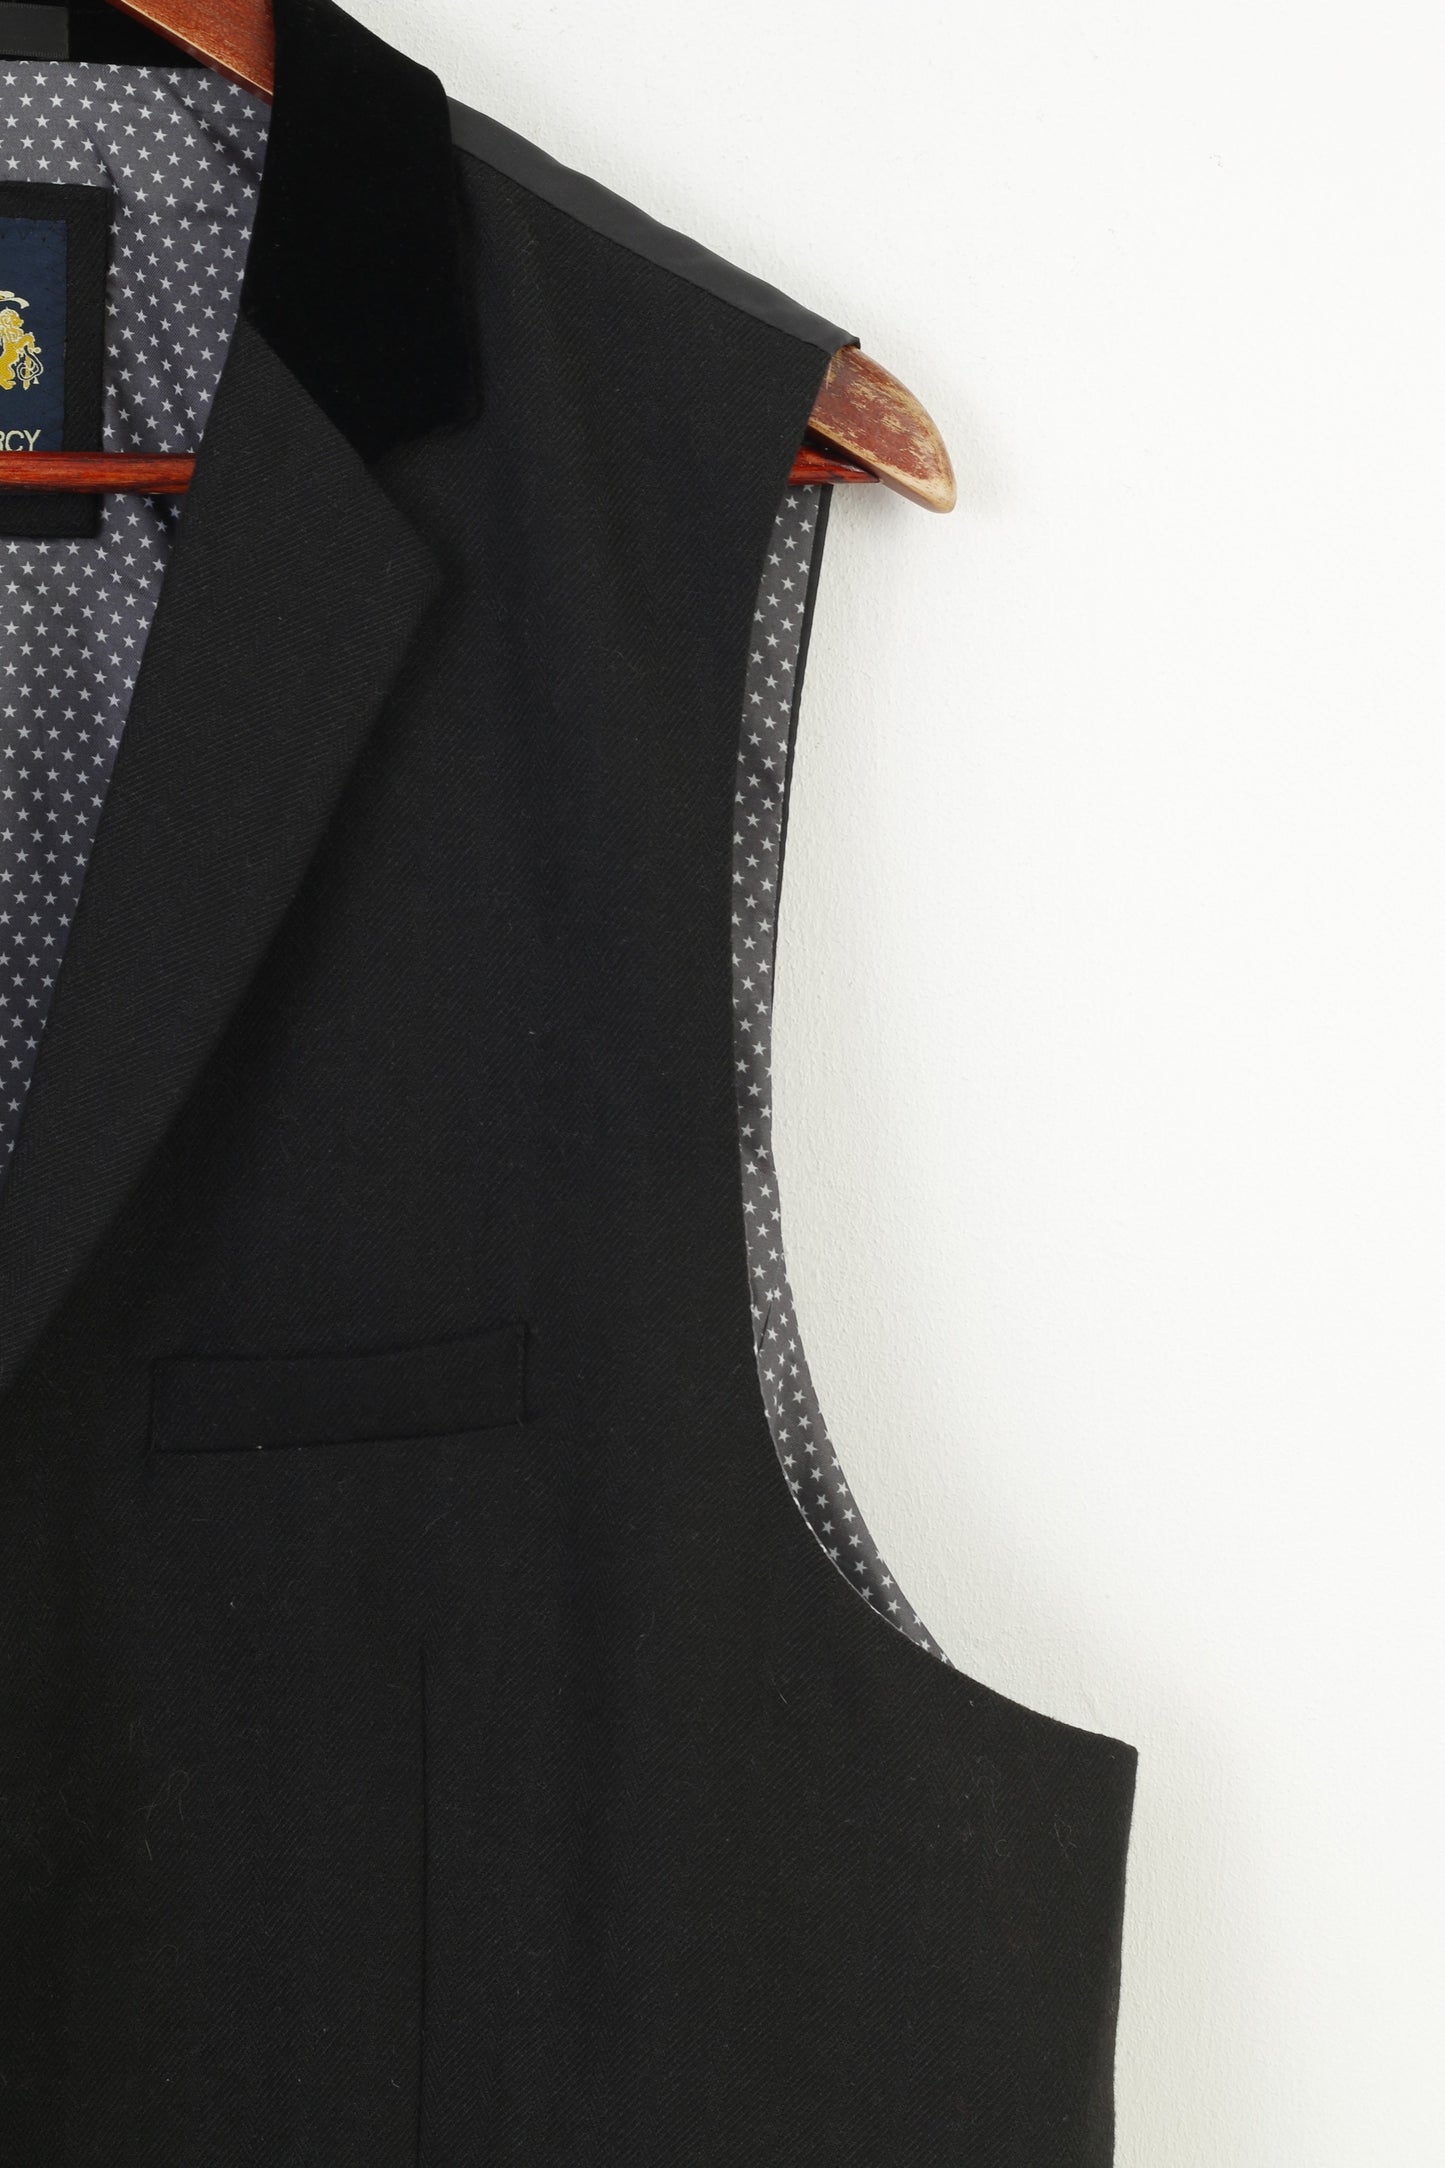 Marc Darcy Men 50 Vest Black Elegant Bottoms Sleevelees London Vintage Top